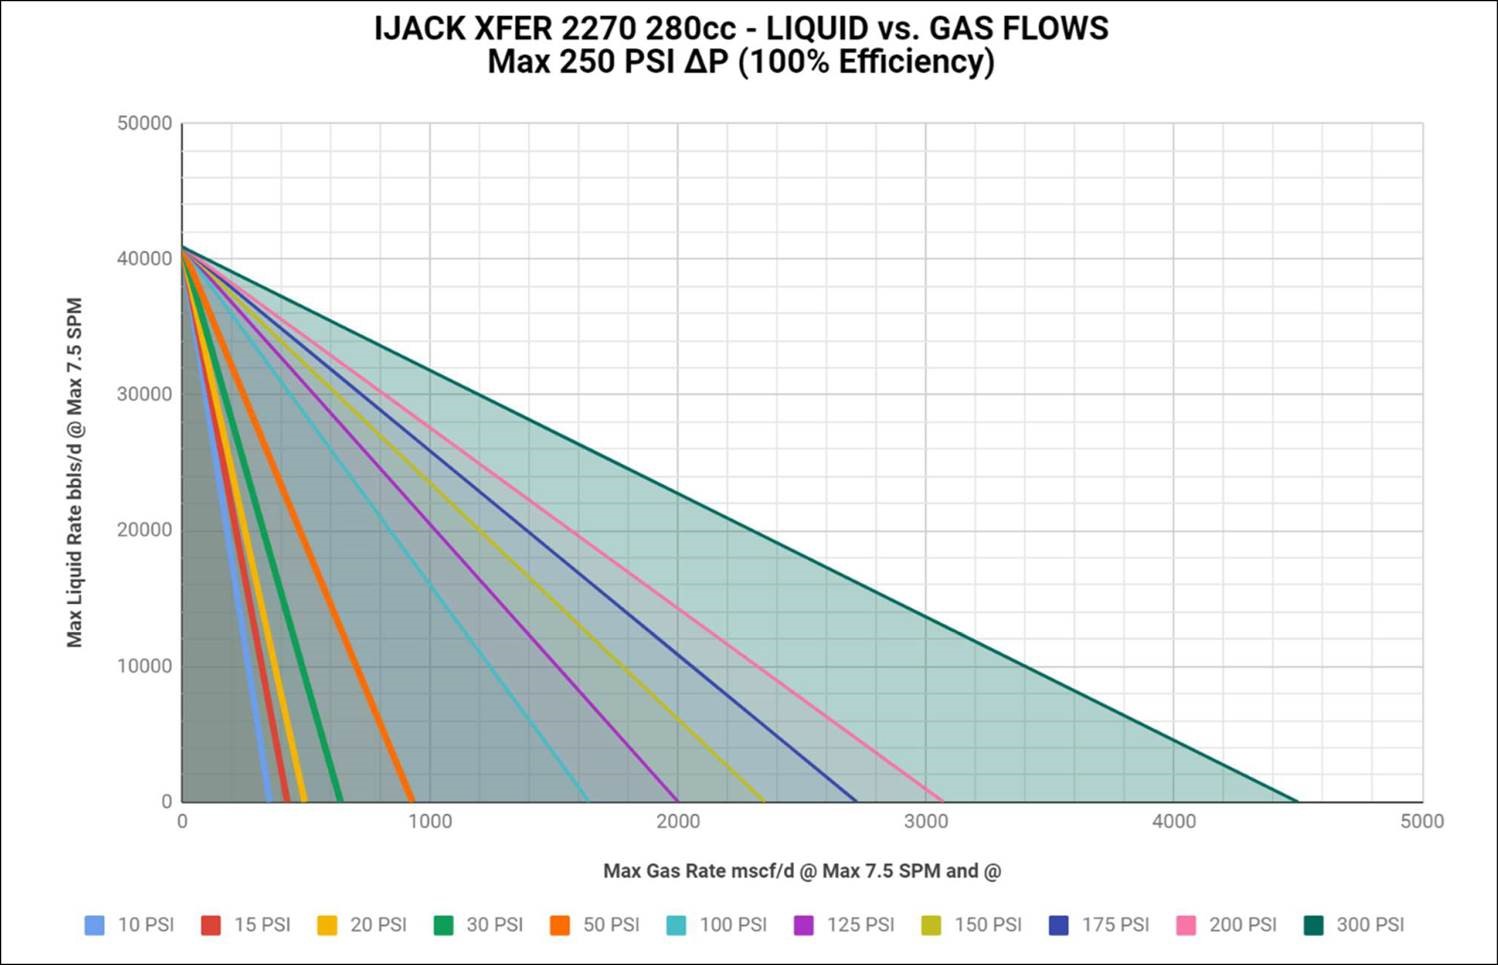 IJACK XFER 2270 280cc liquid vs gas flows max 250 PSI delta-p at 100 percent efficiency